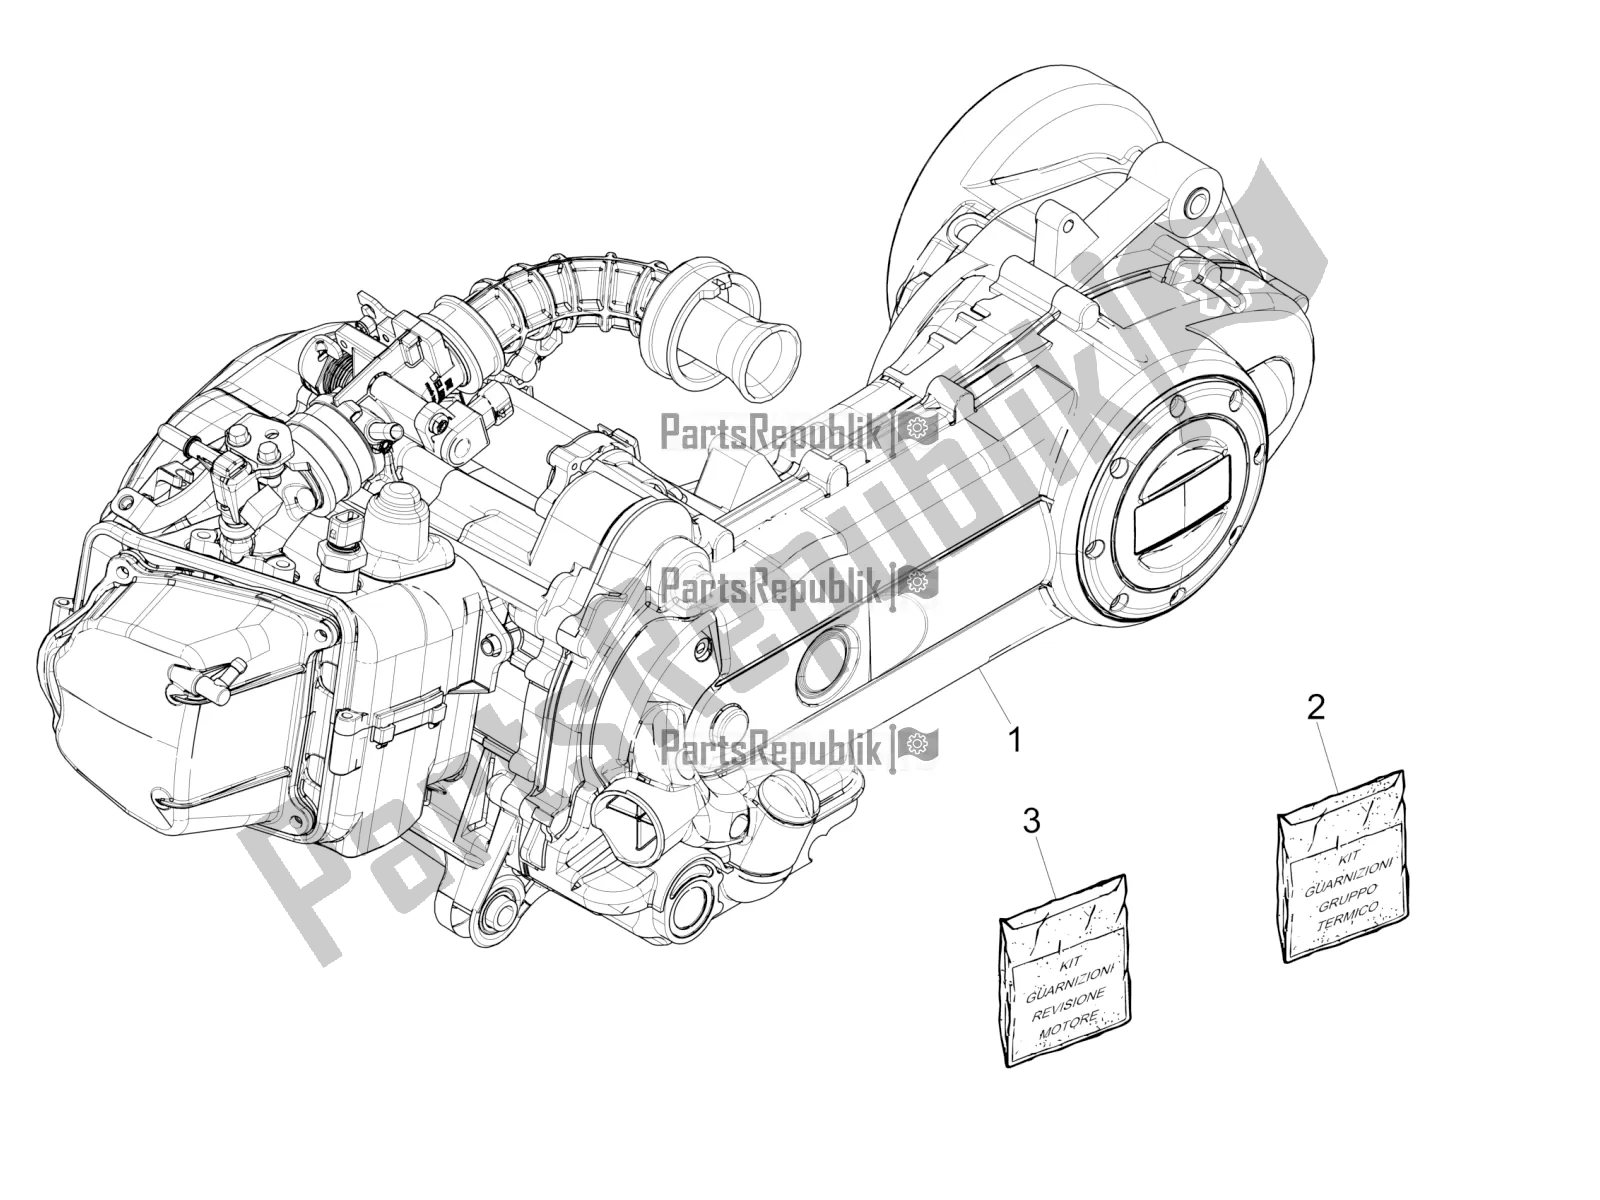 Alle onderdelen voor de Motor Assemblage van de Vespa Primavera 50 USA 2022